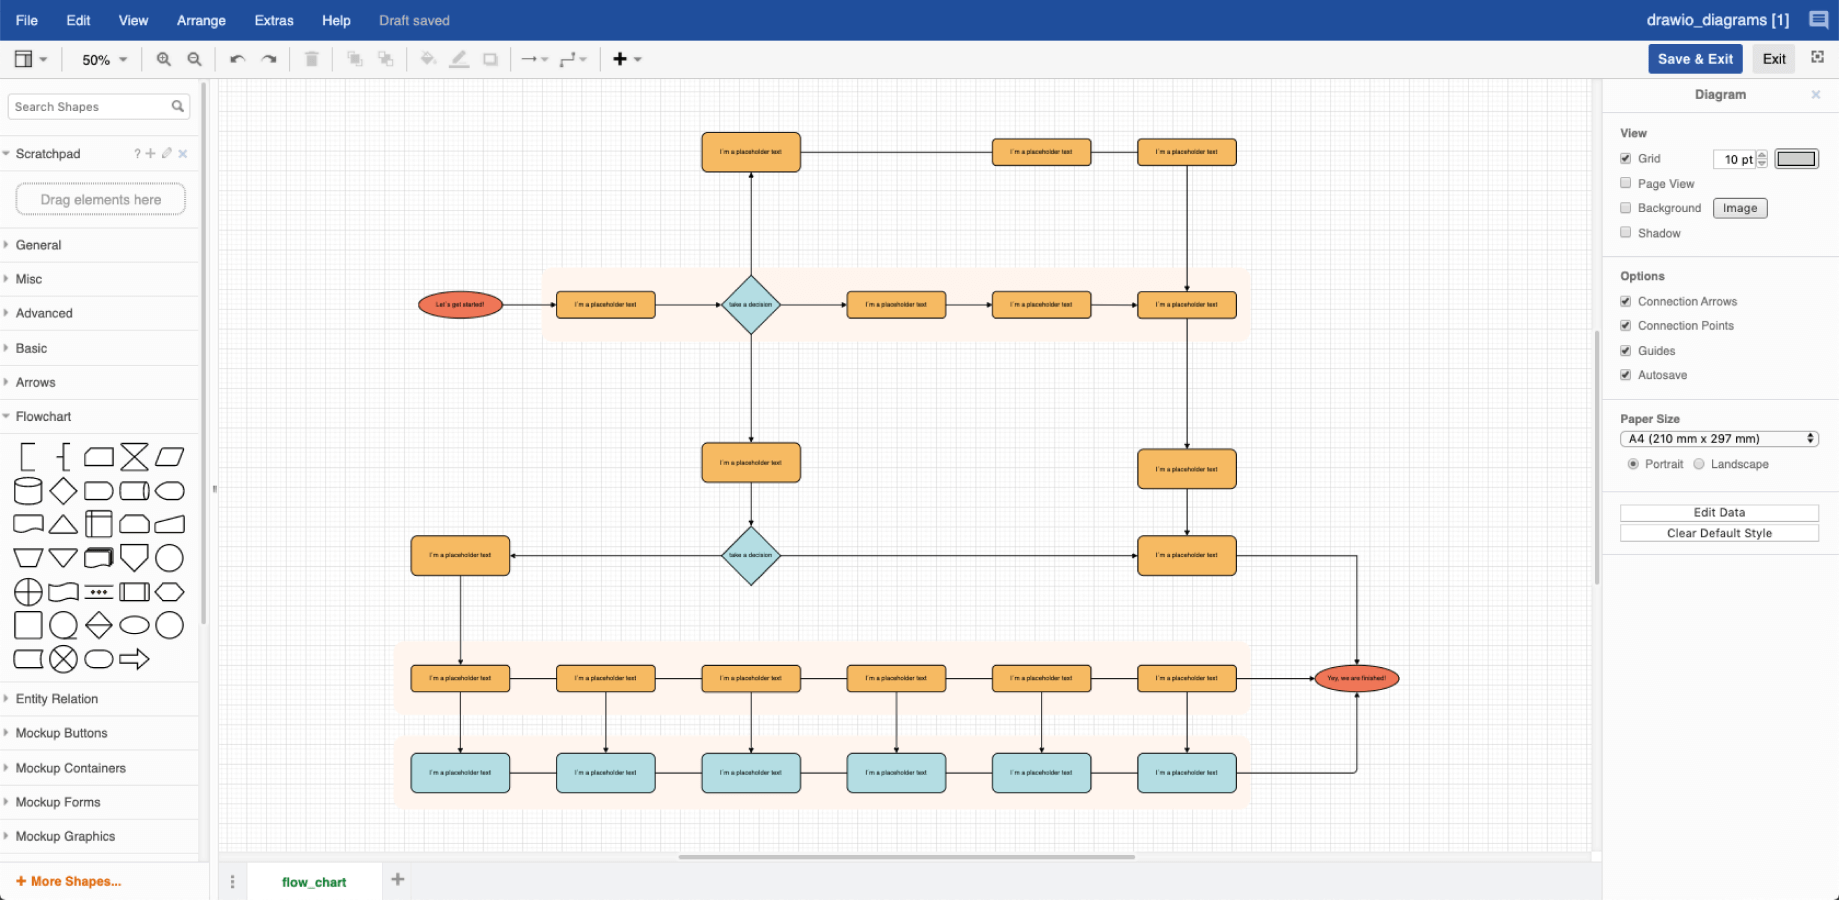 プロセス図のサンプル (Draw.io の厚意により掲載)